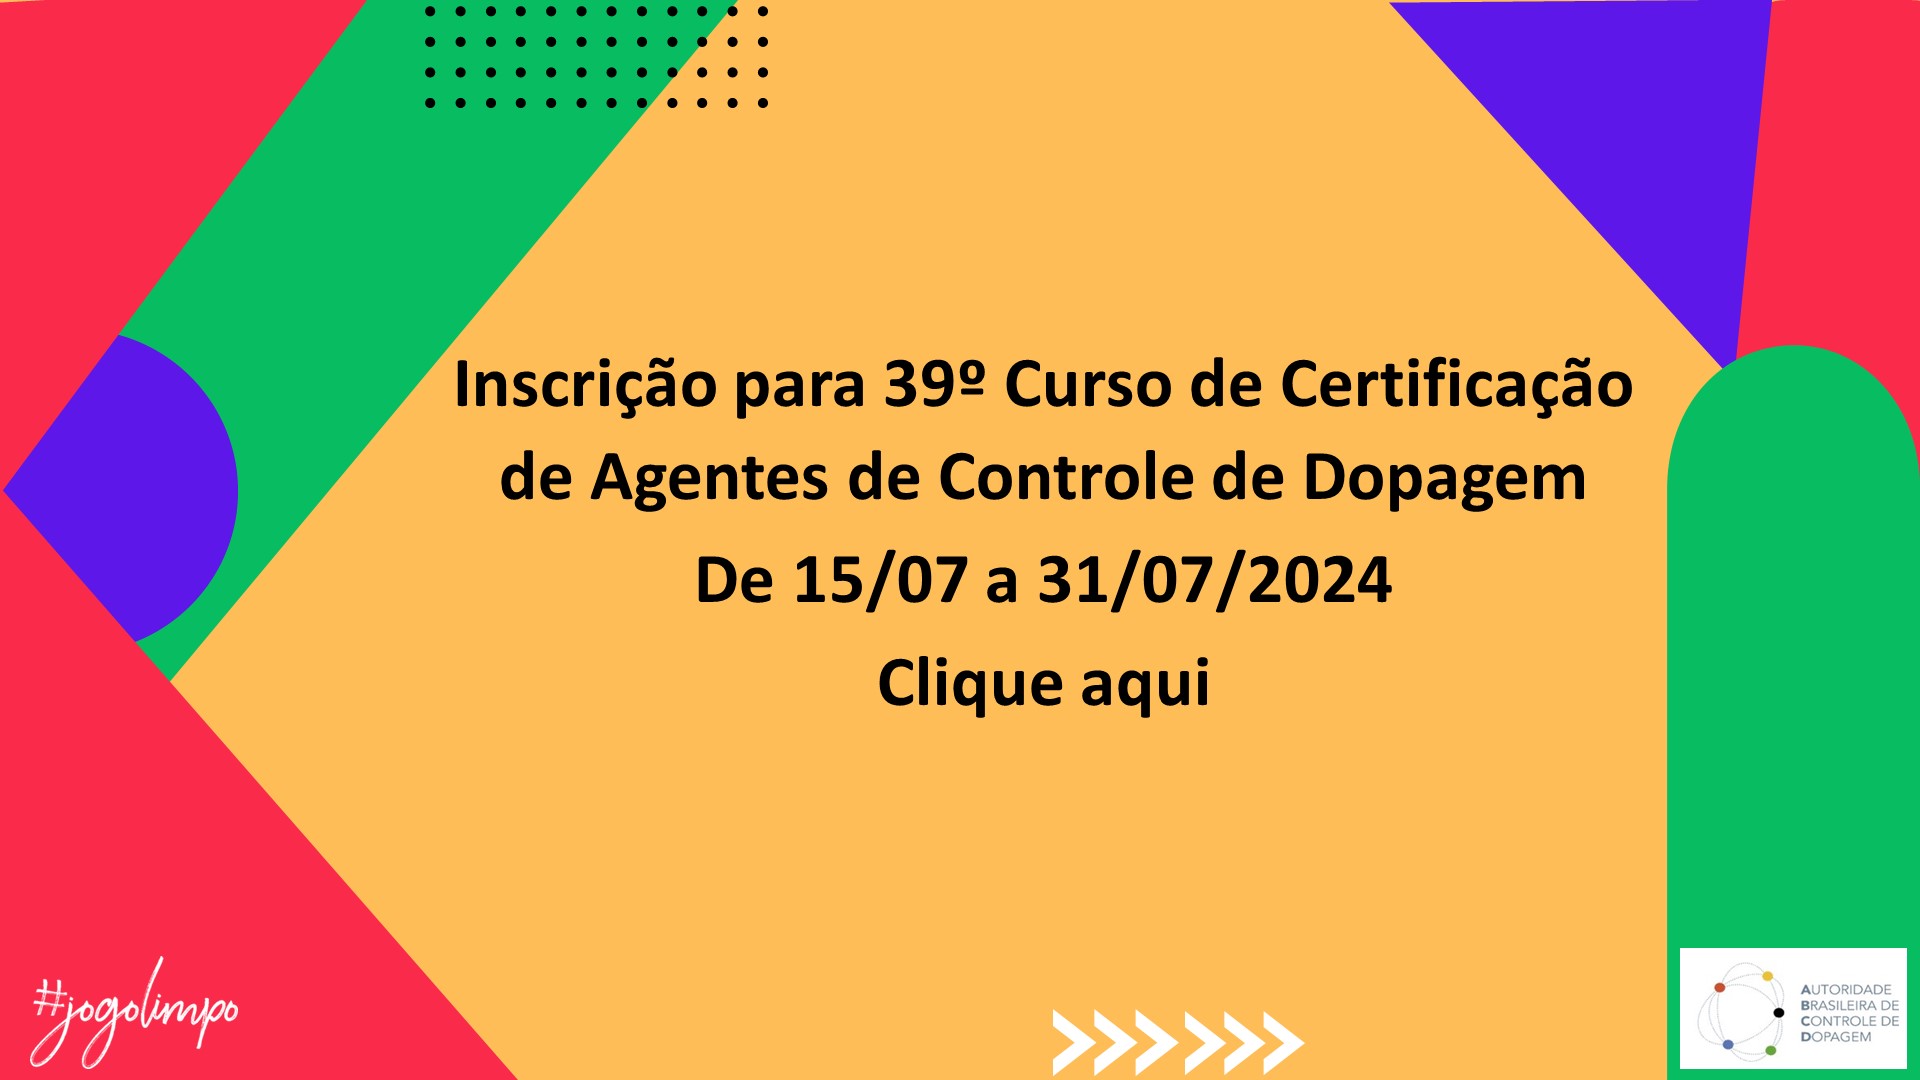 Inscrições para 39º Curso de Certificação de Agentes de Controle de Dopagem De 15/07 a 31/07/2024